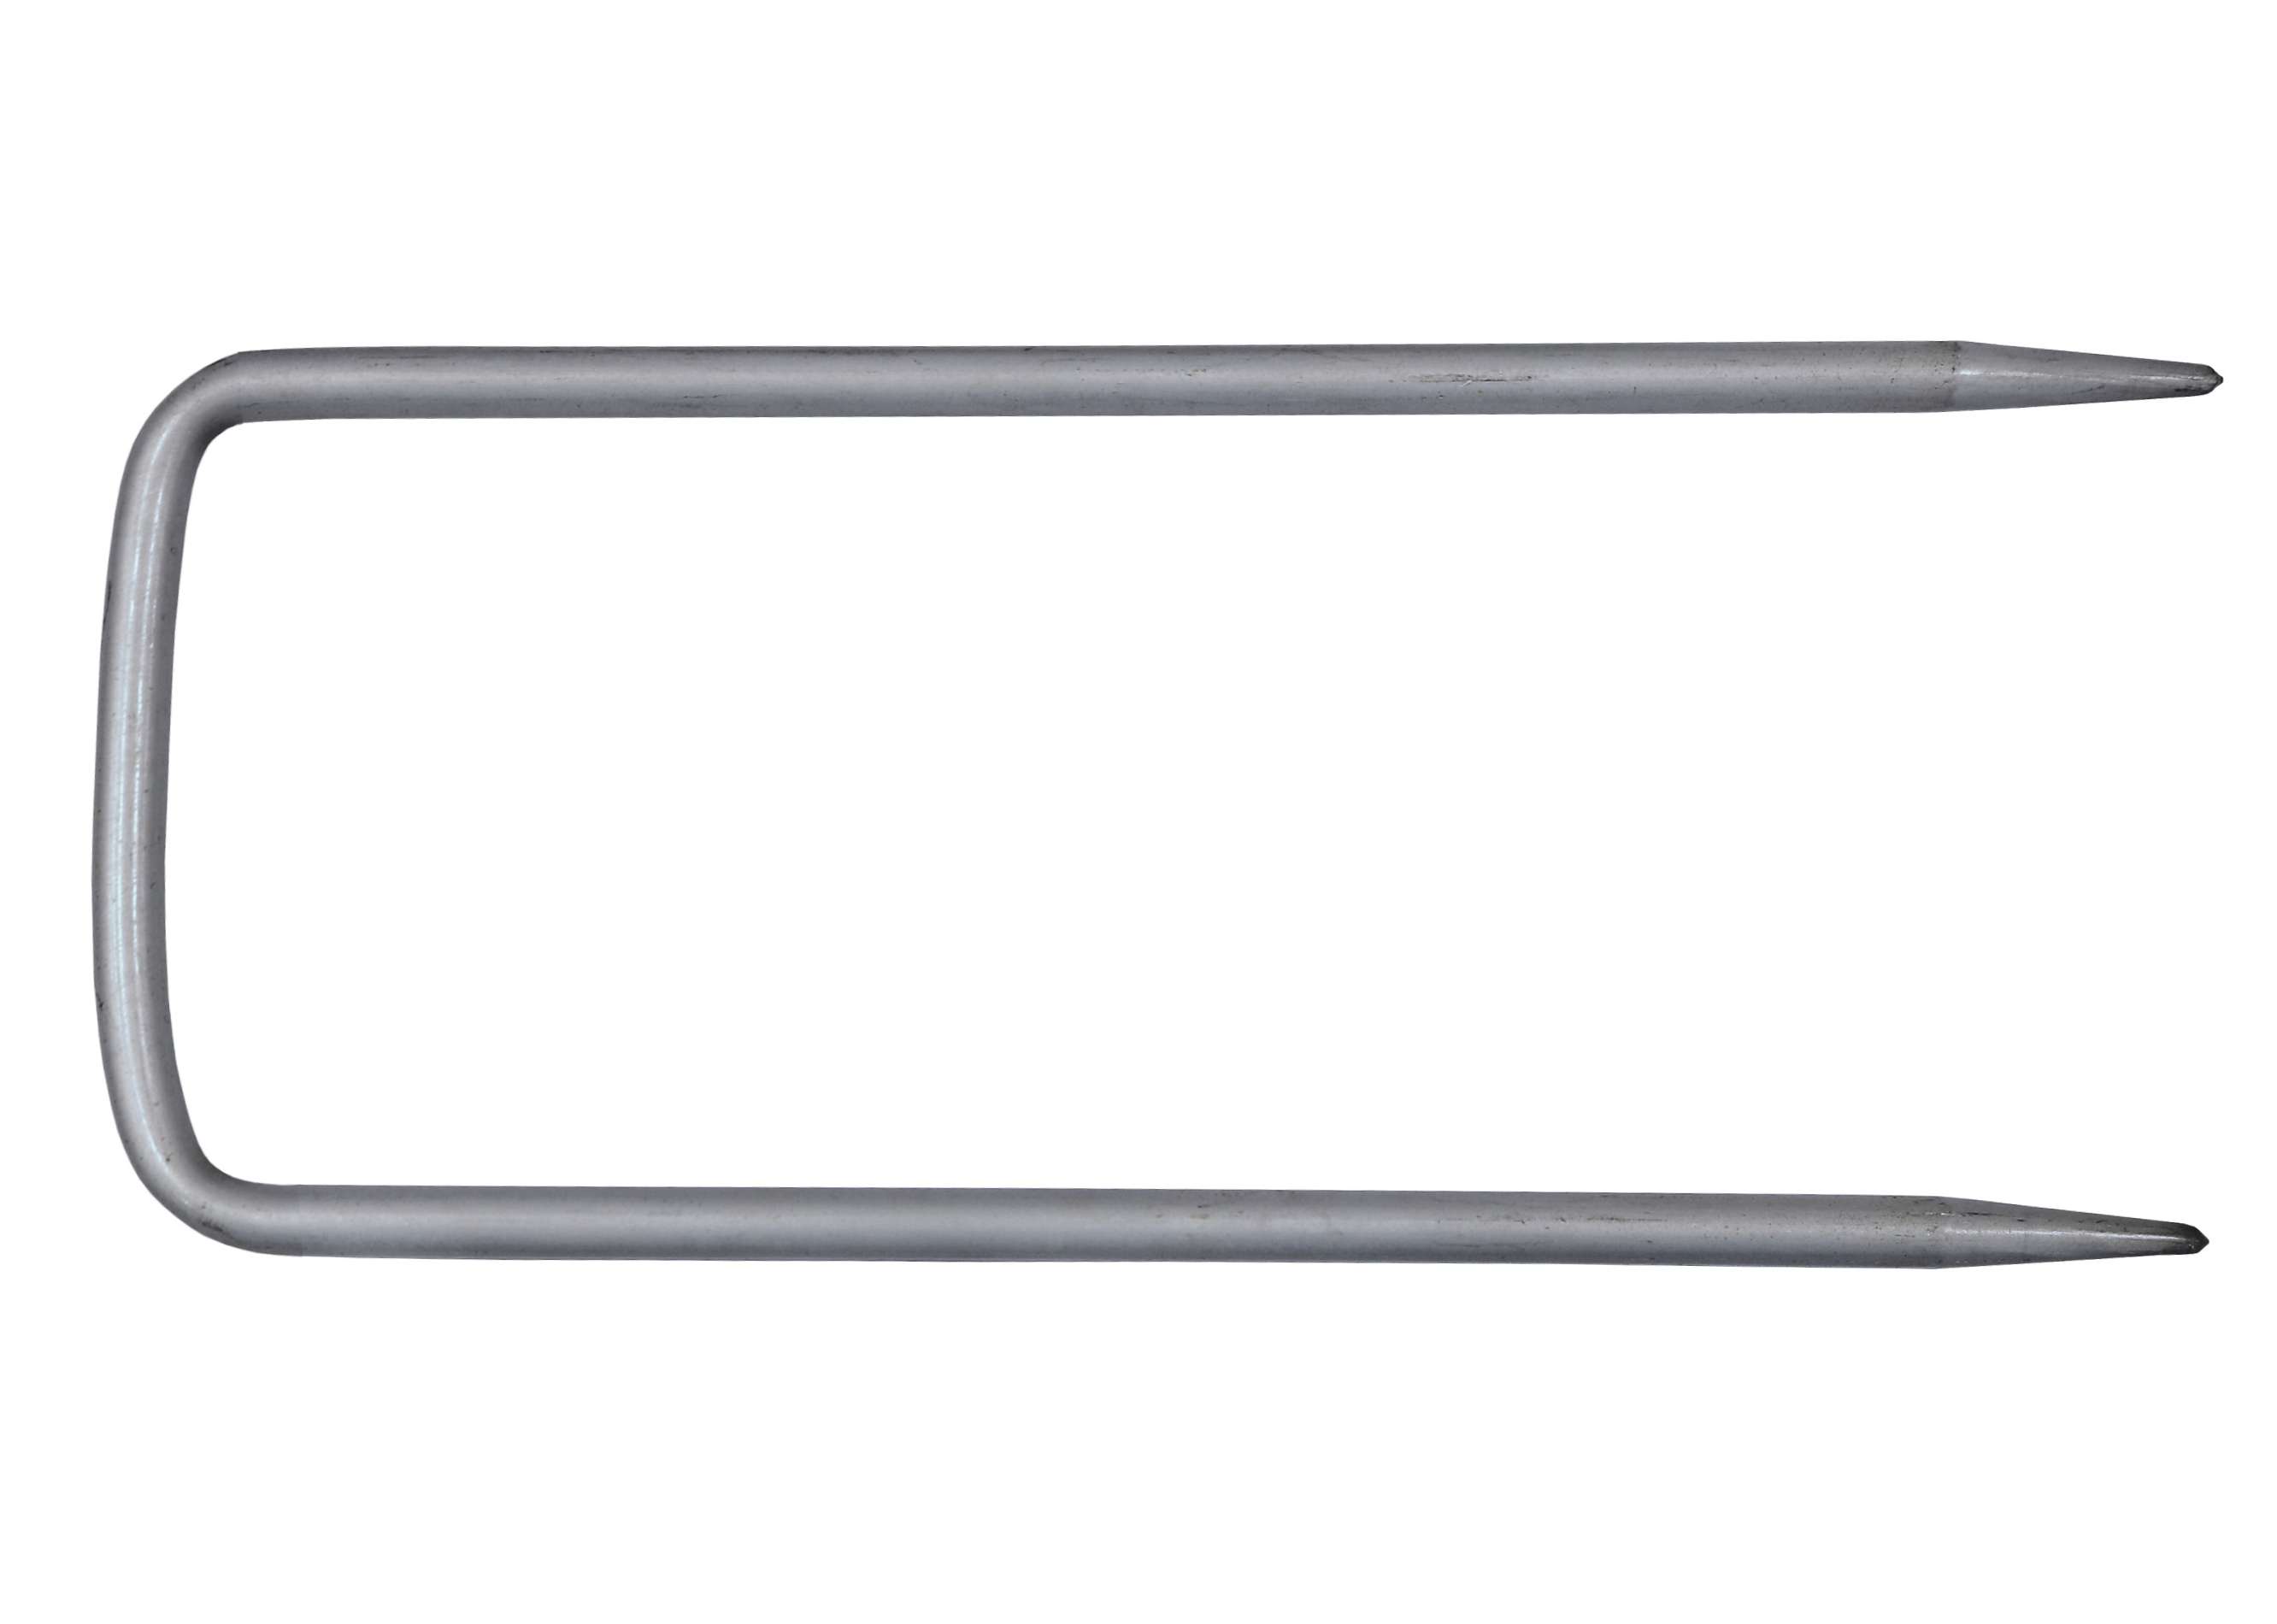 Φουρκέτα Πλεξίματος Σχήμα Π 5mm (14.5x5.5cm)